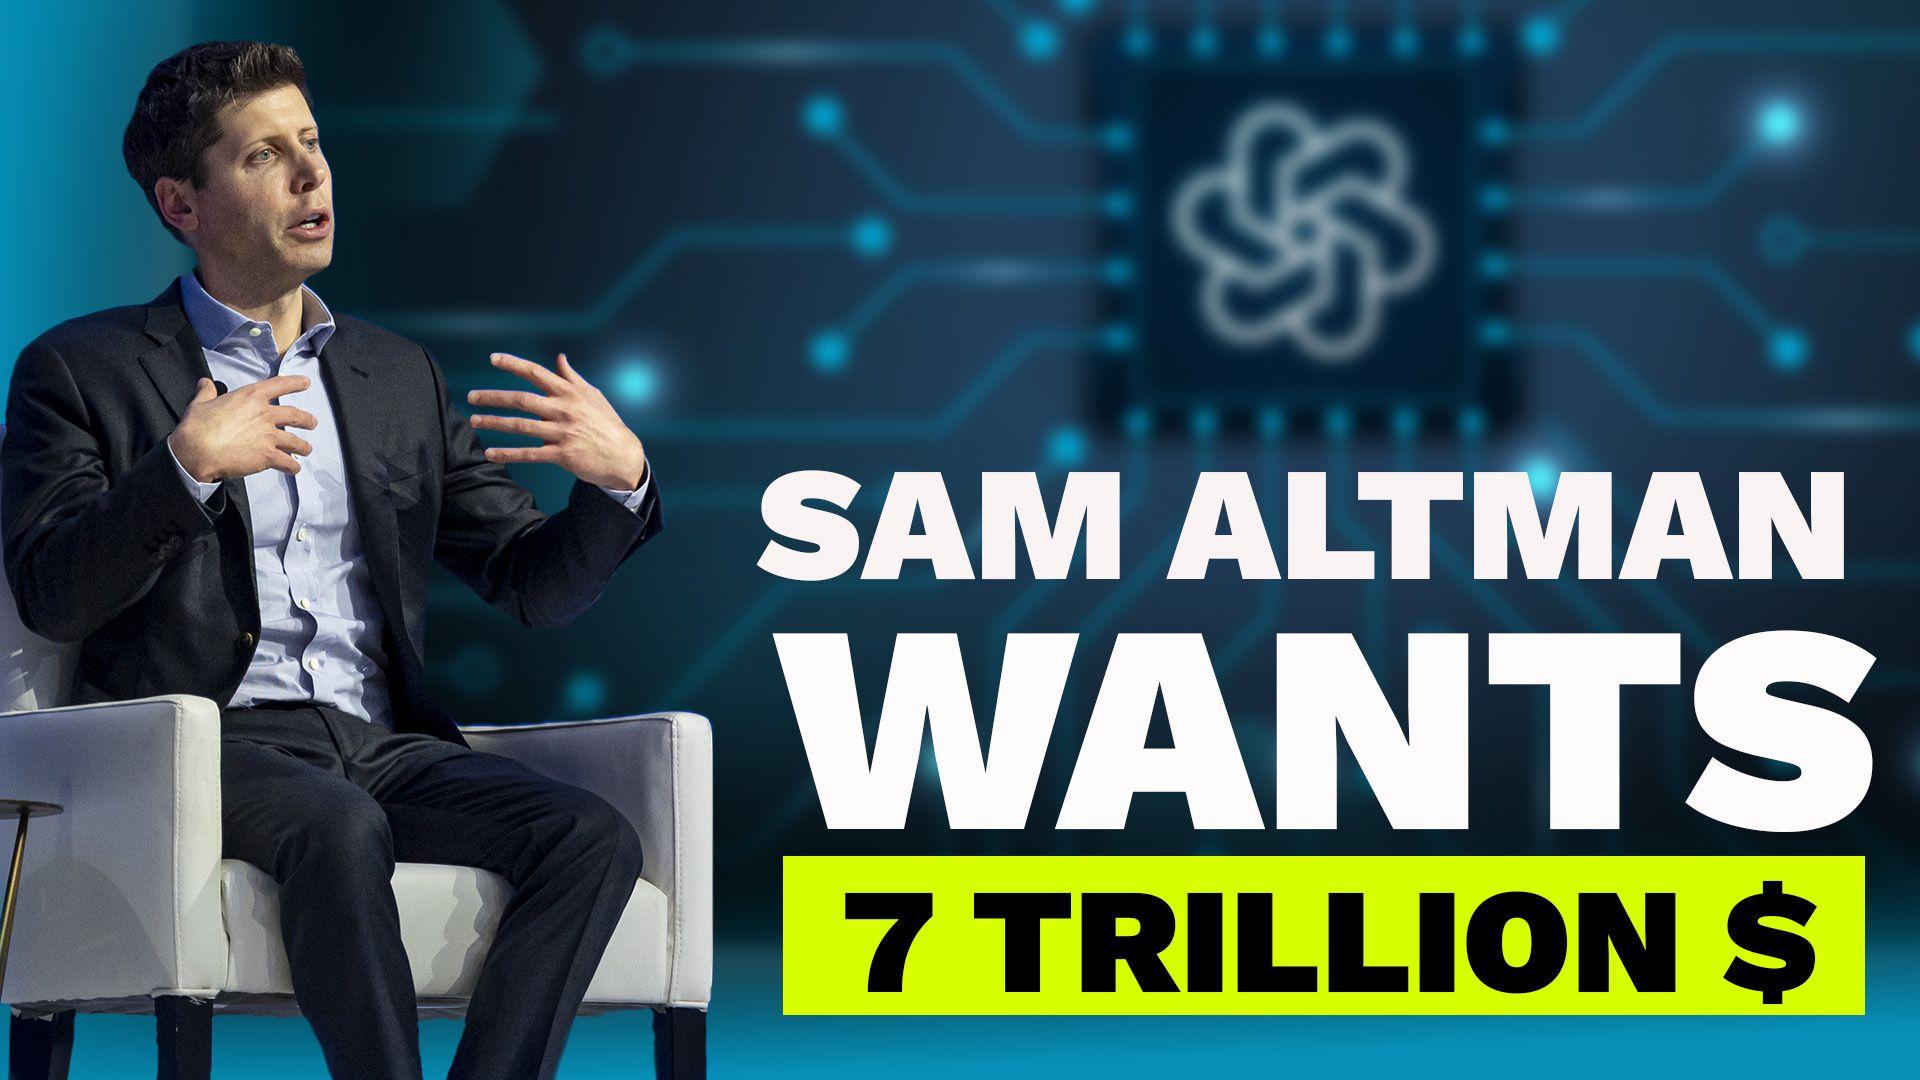 Sam Altman wants 7 Trillion Dollars??